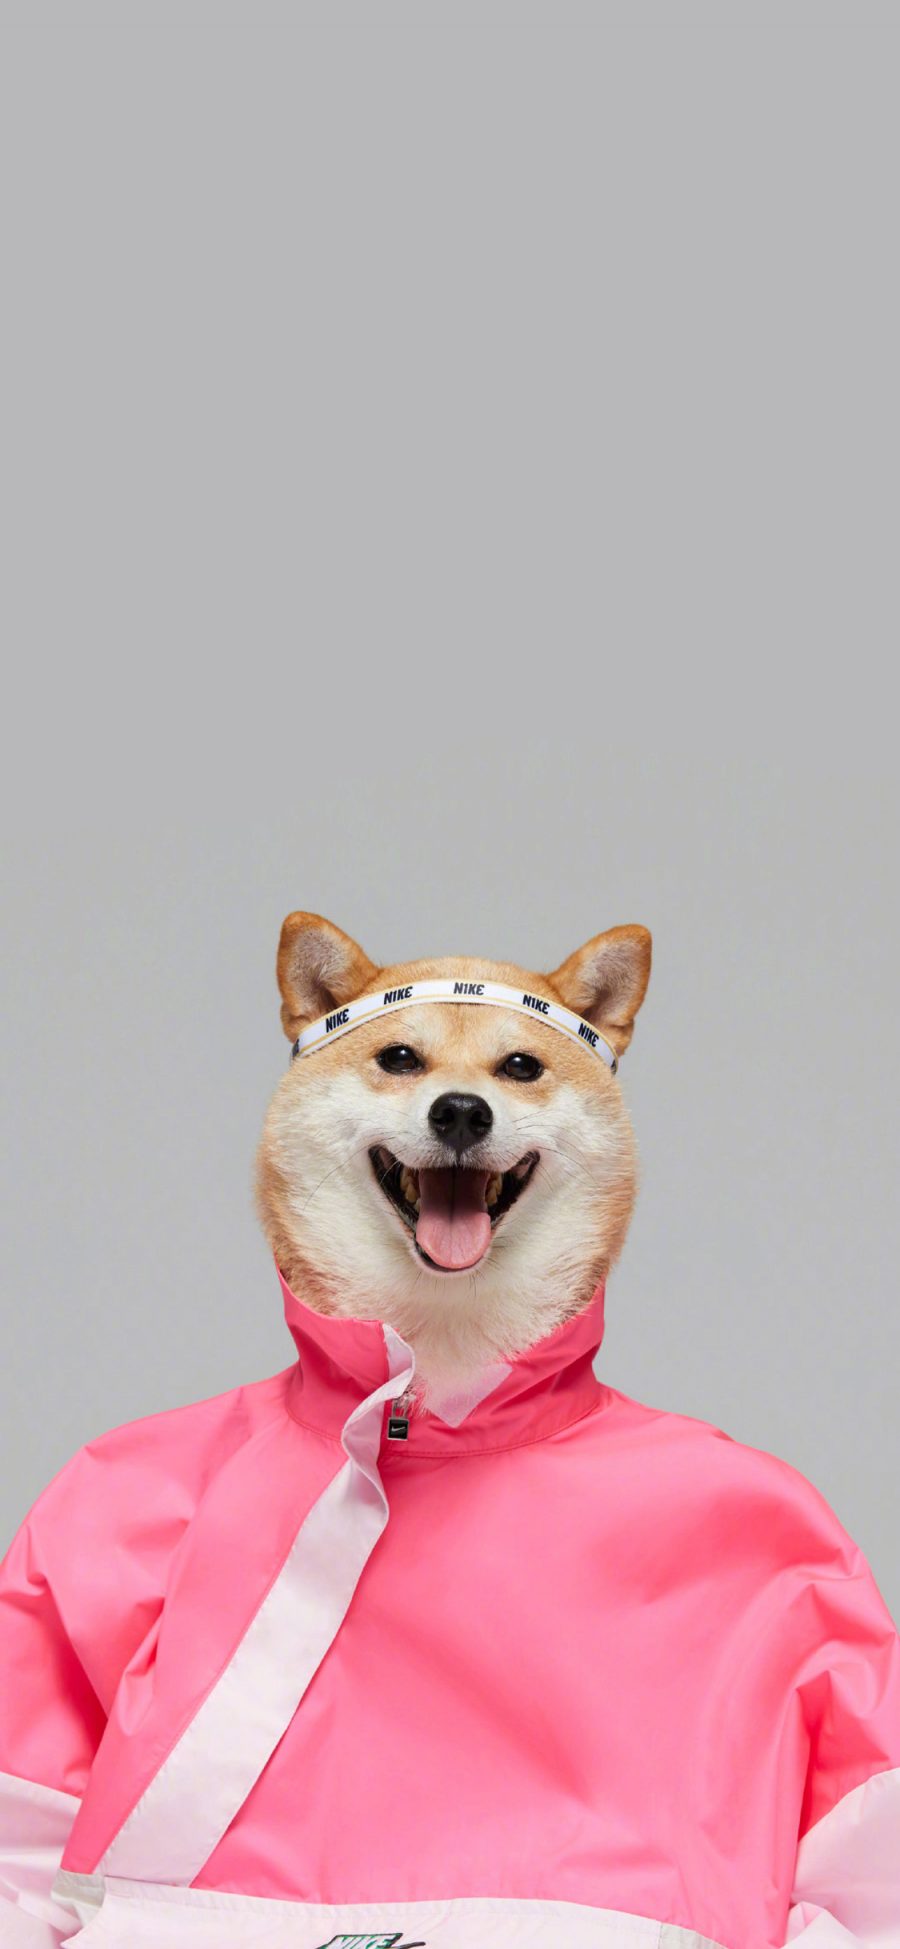 [2436×1125]柴犬 服装 狗 犬 耐克 发带 汪星人 苹果手机壁纸图片